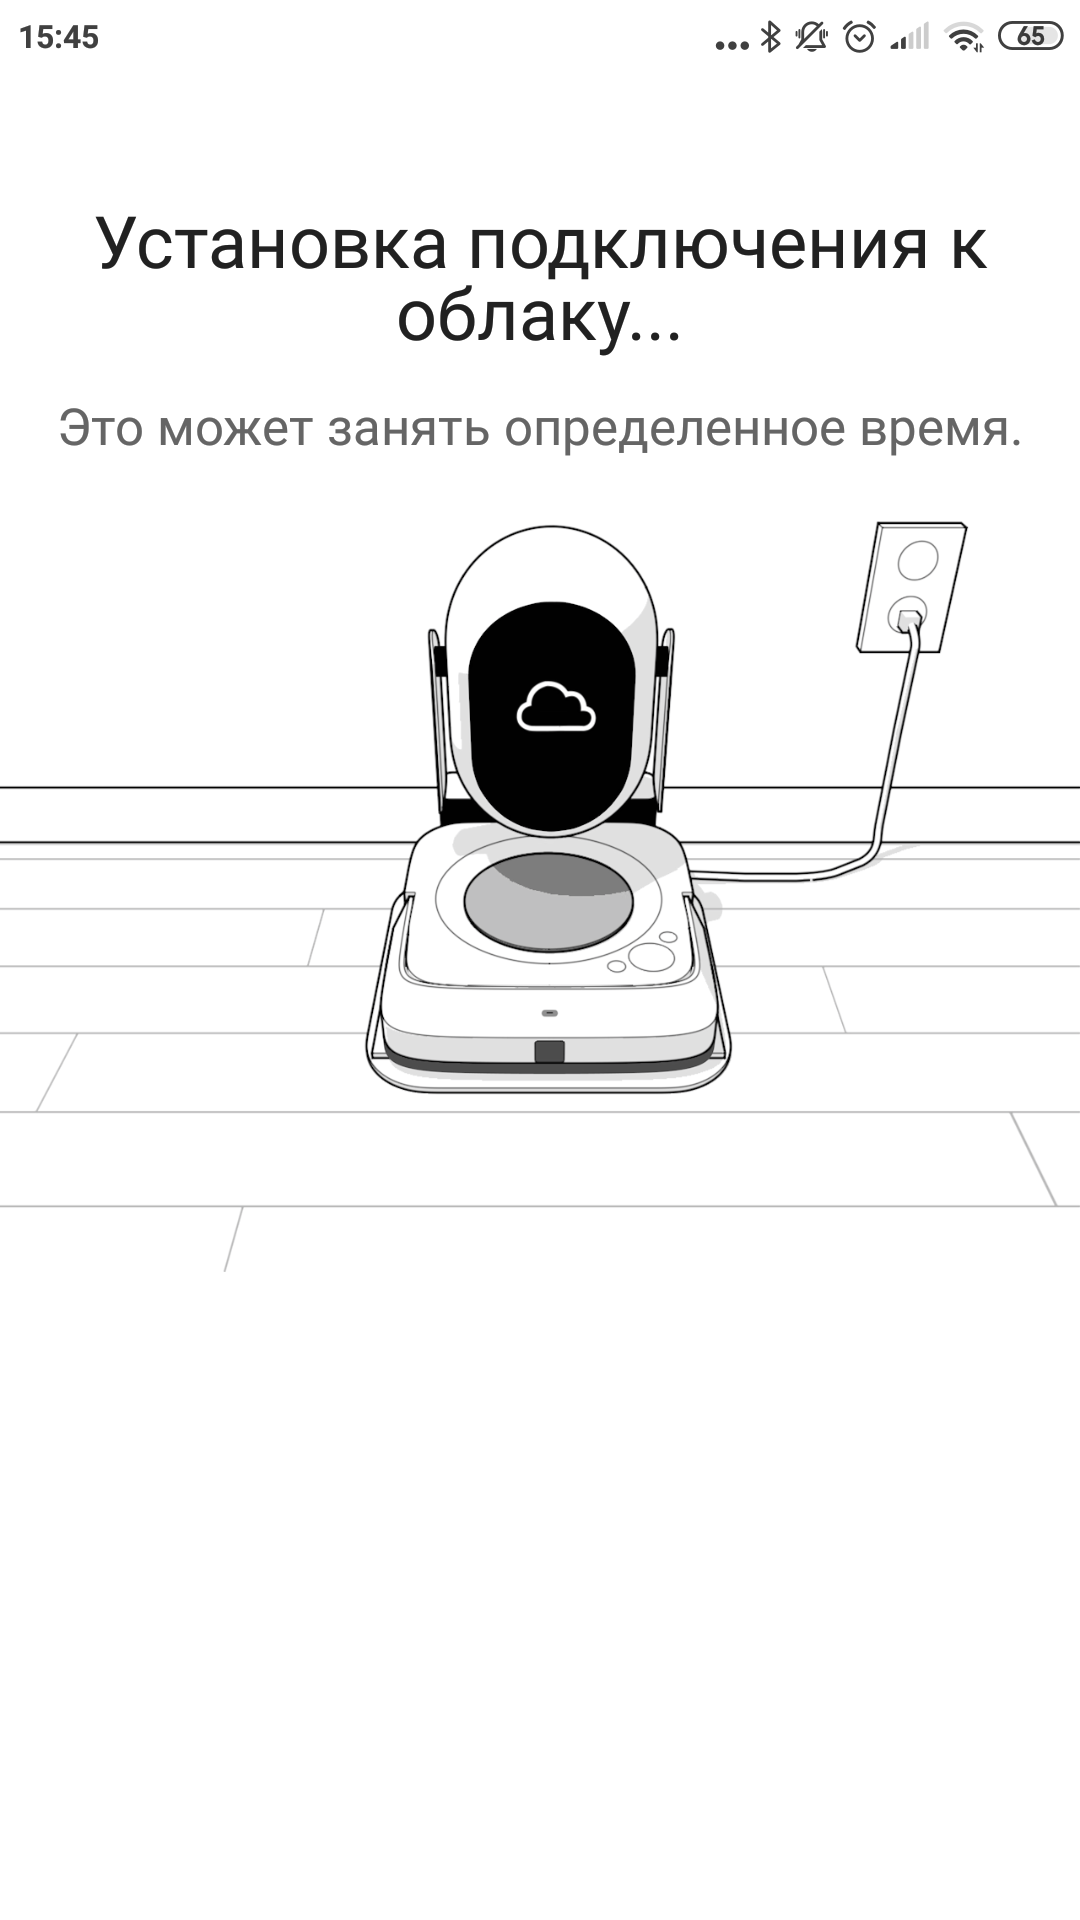 Обзор роботов-уборщиков iRobot Roomba s9+ и Braava jet m6: парное катание-60